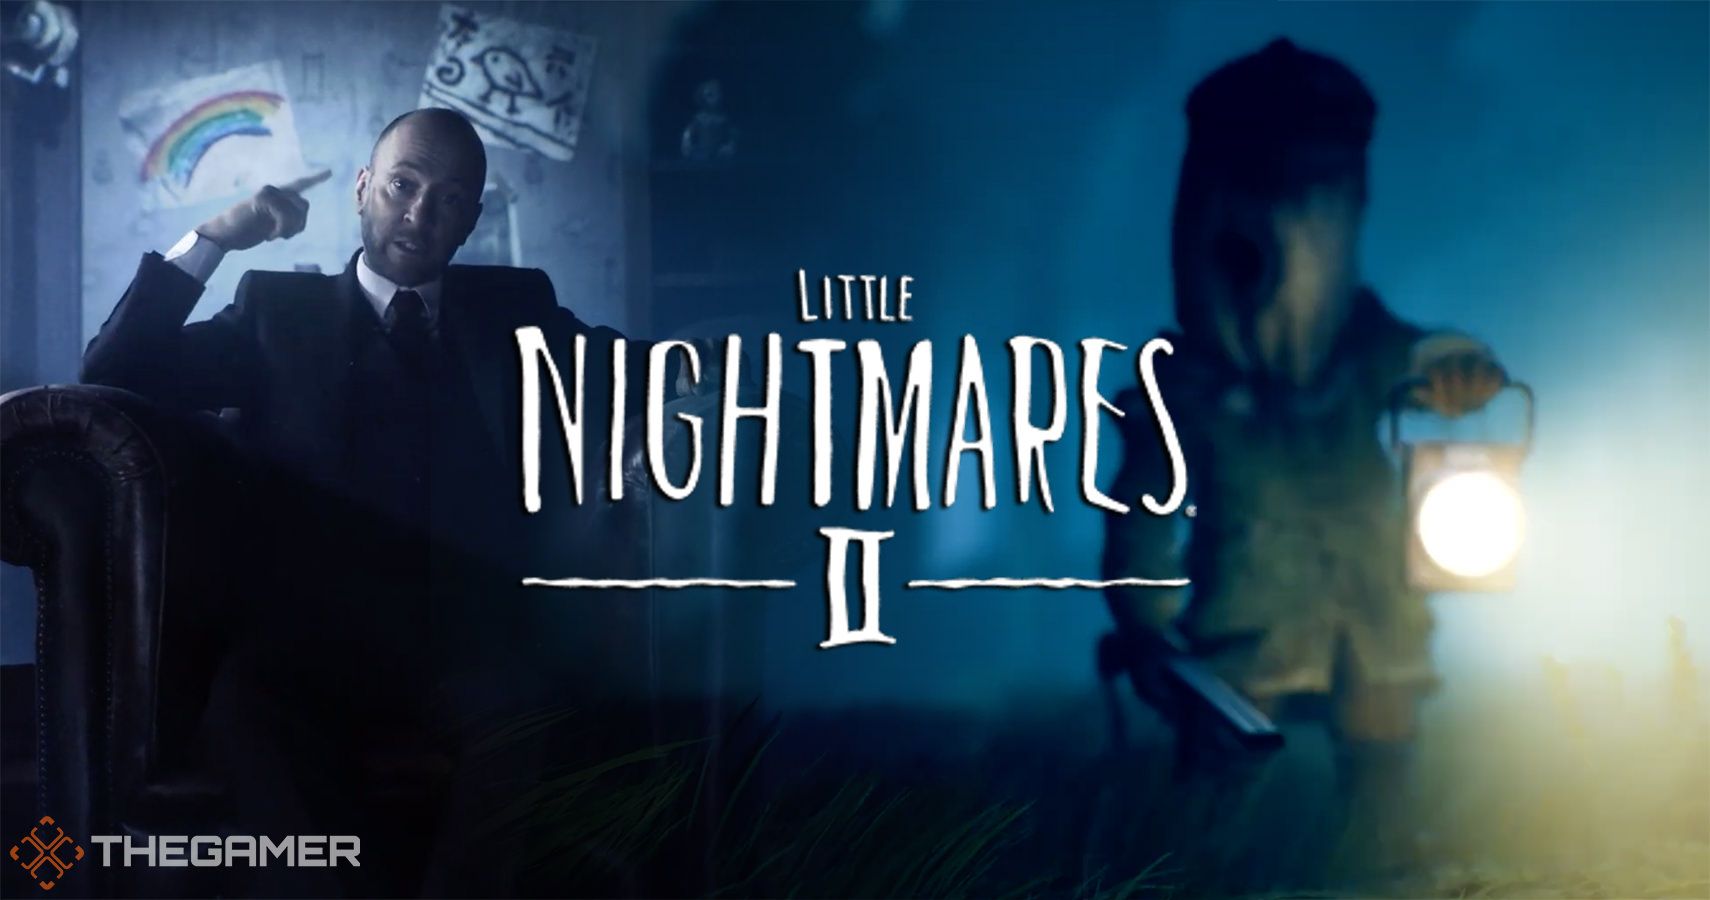 Little Nightmares II - Nightmares Explained with Derren Brown 